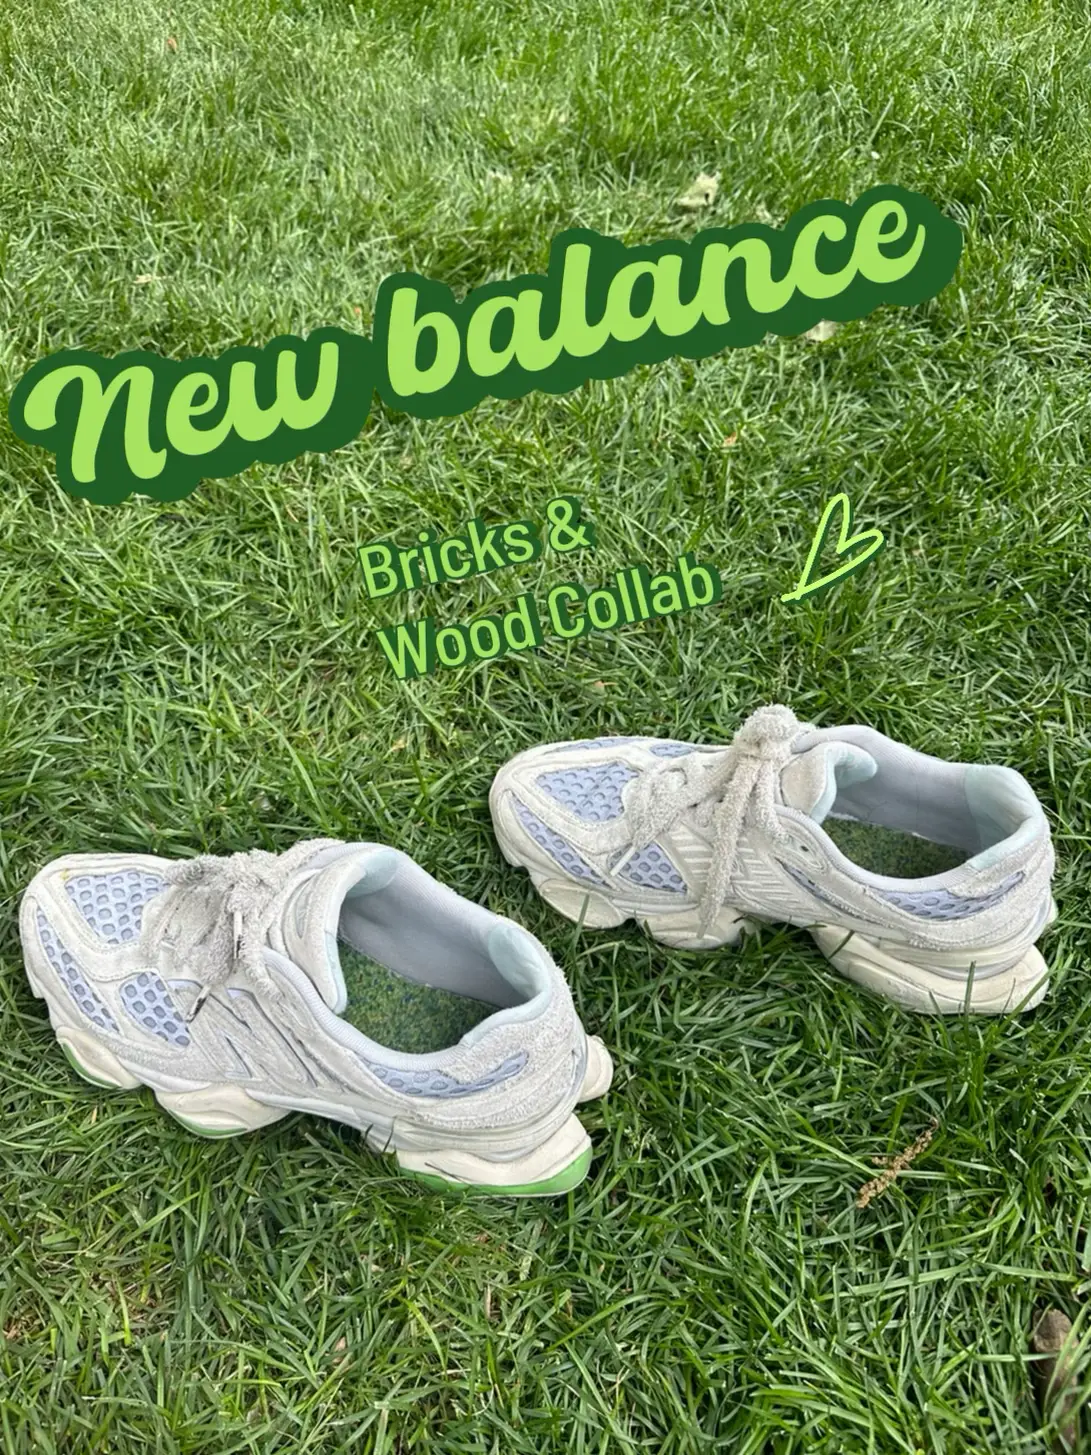 Detailed Look at Bricks & Wood's New Balance 9060 Collab